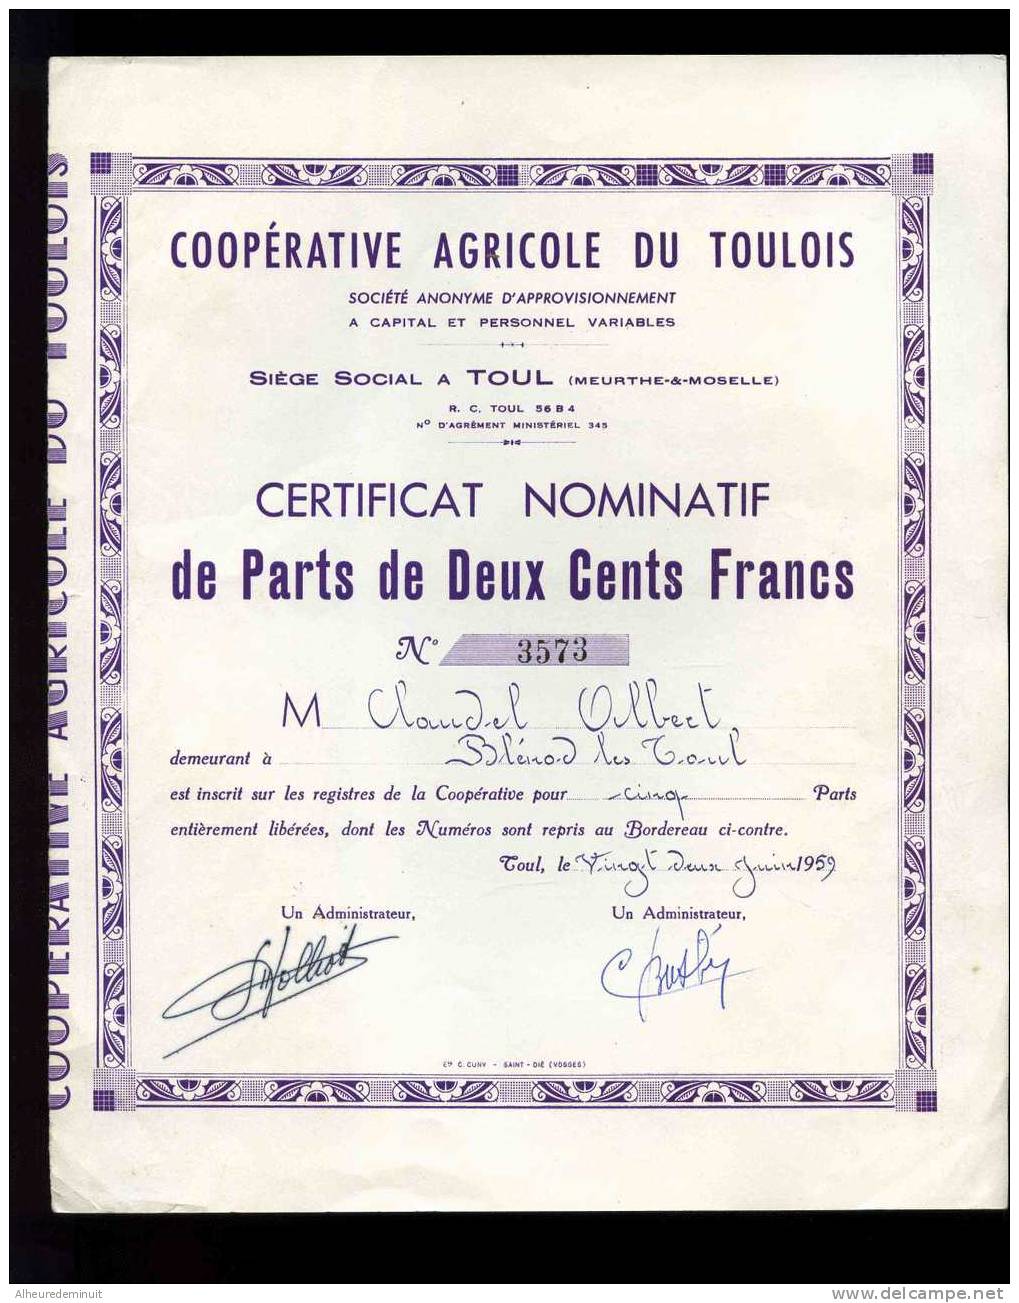 COOPERATIVE AGRICOLE DU TOULOIS"CERTIFICAT NOMITATIF DE PARTS DE 200 CENTS FRANCS"1959"5 Parts"anciens Francs - Landwirtschaft